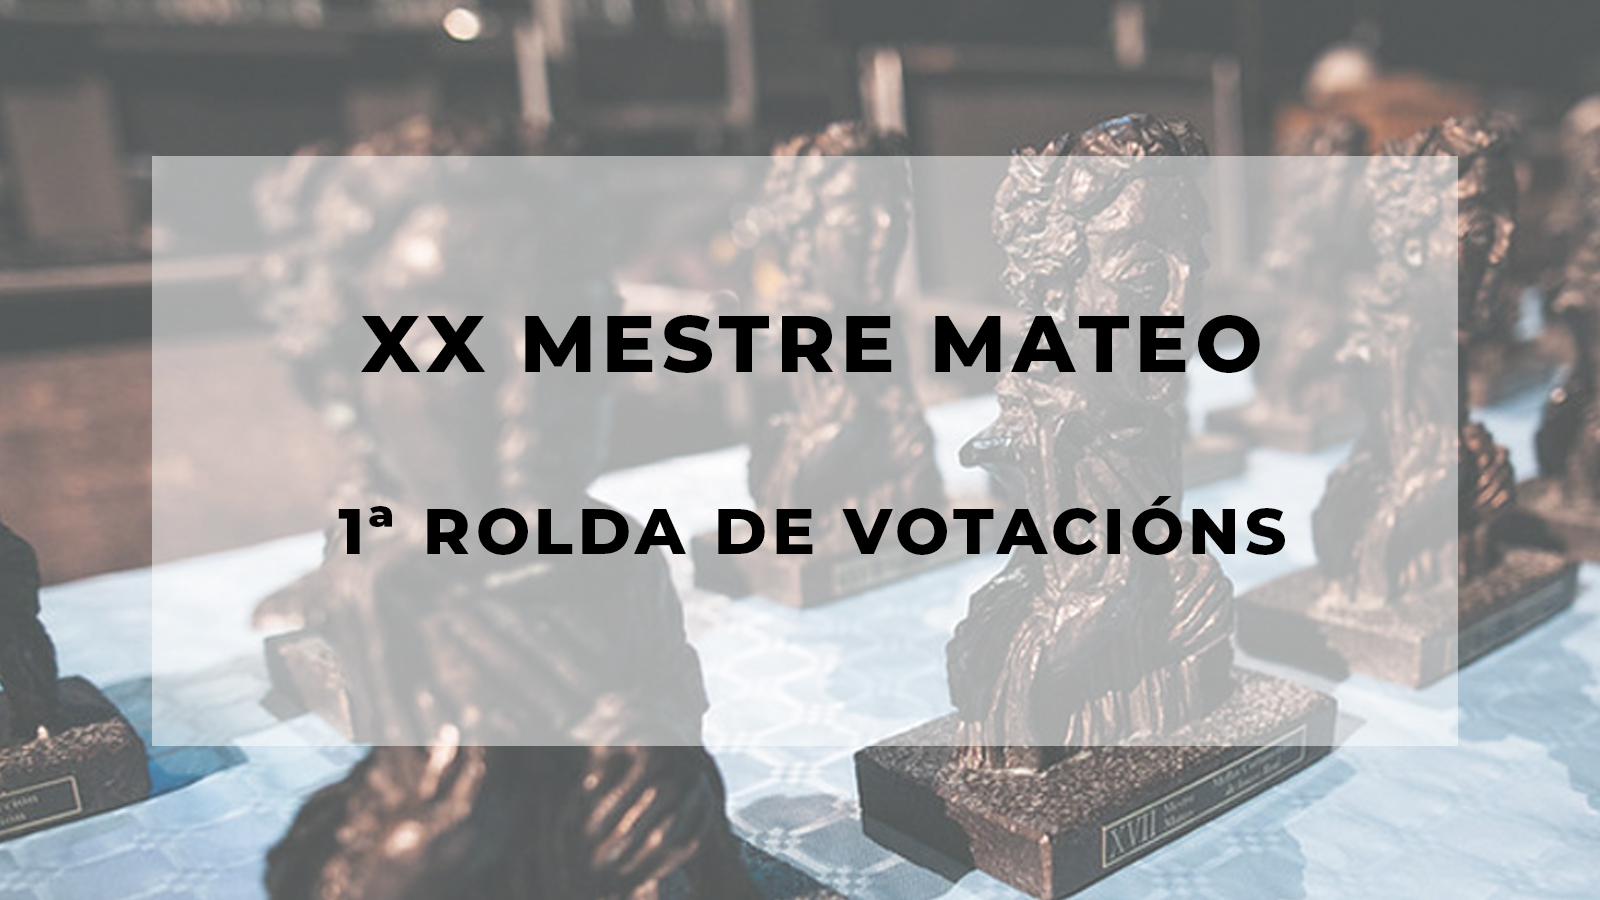 Primeira rolda de votacións dos XX Mestre Mateo